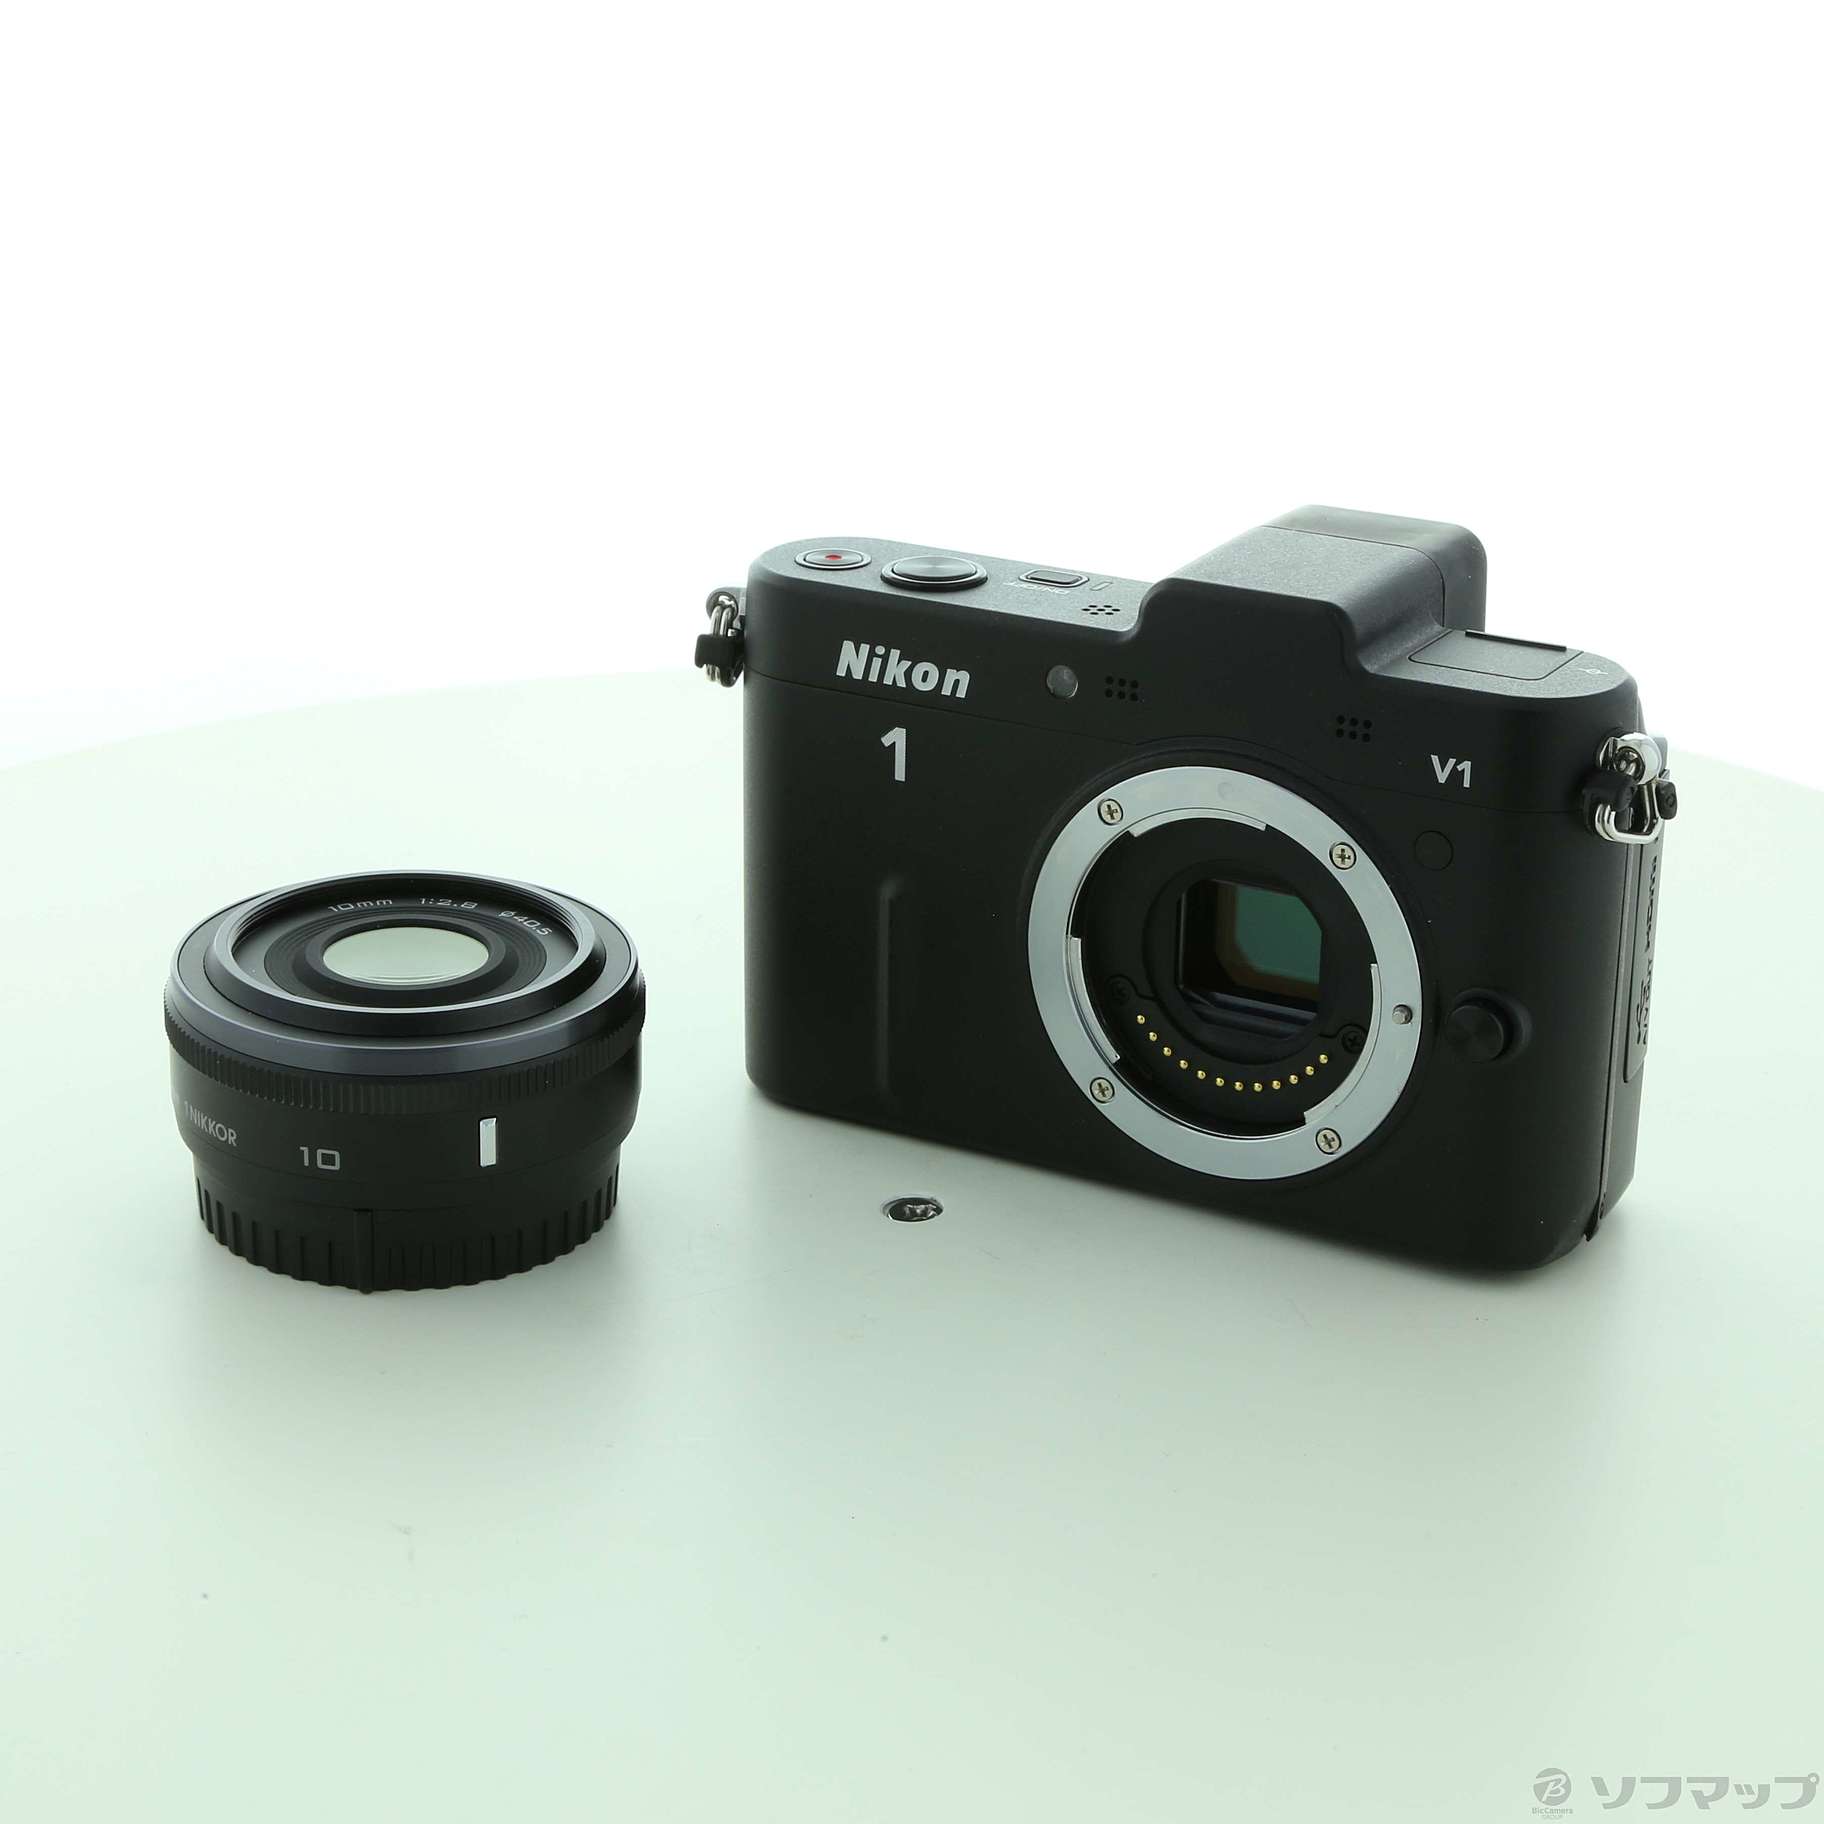 シリーズ1ニコン Nikon1 v1 レンズセット